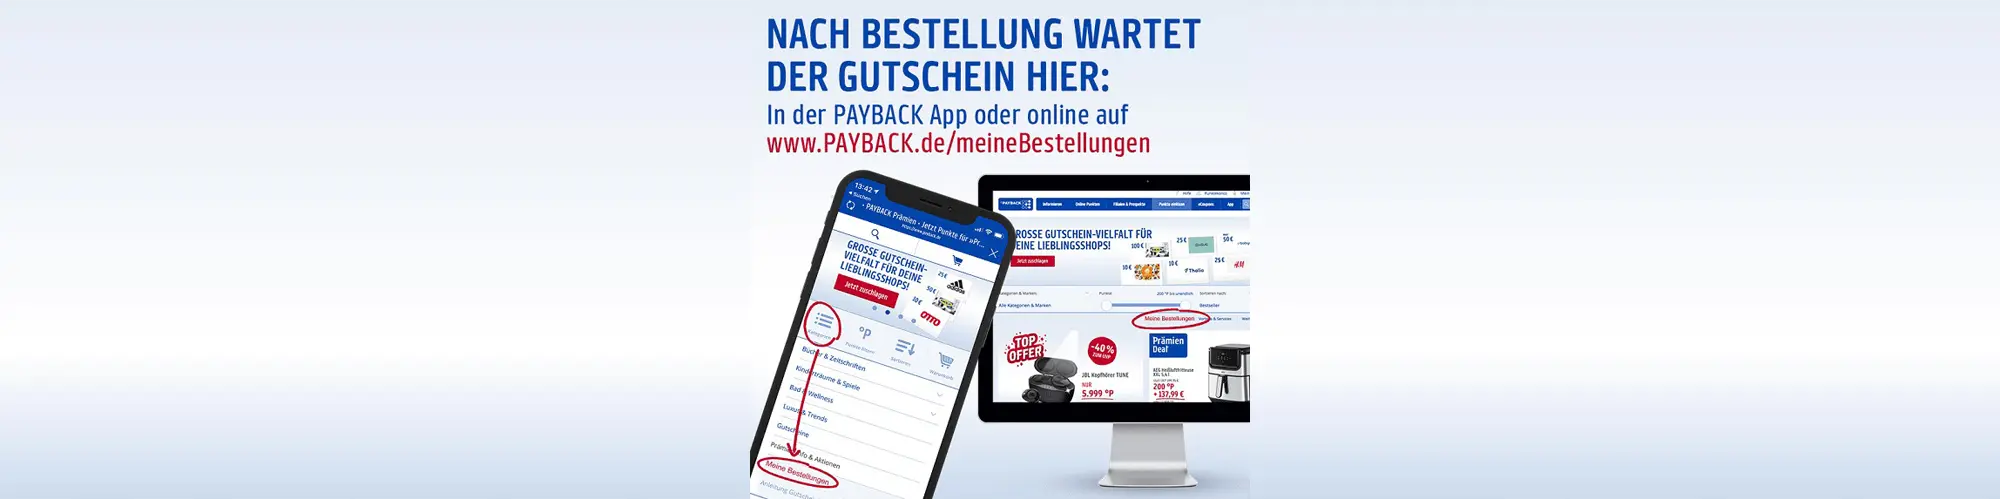 Dein Gutschein wartet in der PAYBACK App oder online auf PAYBACK.de/meineBestellungen